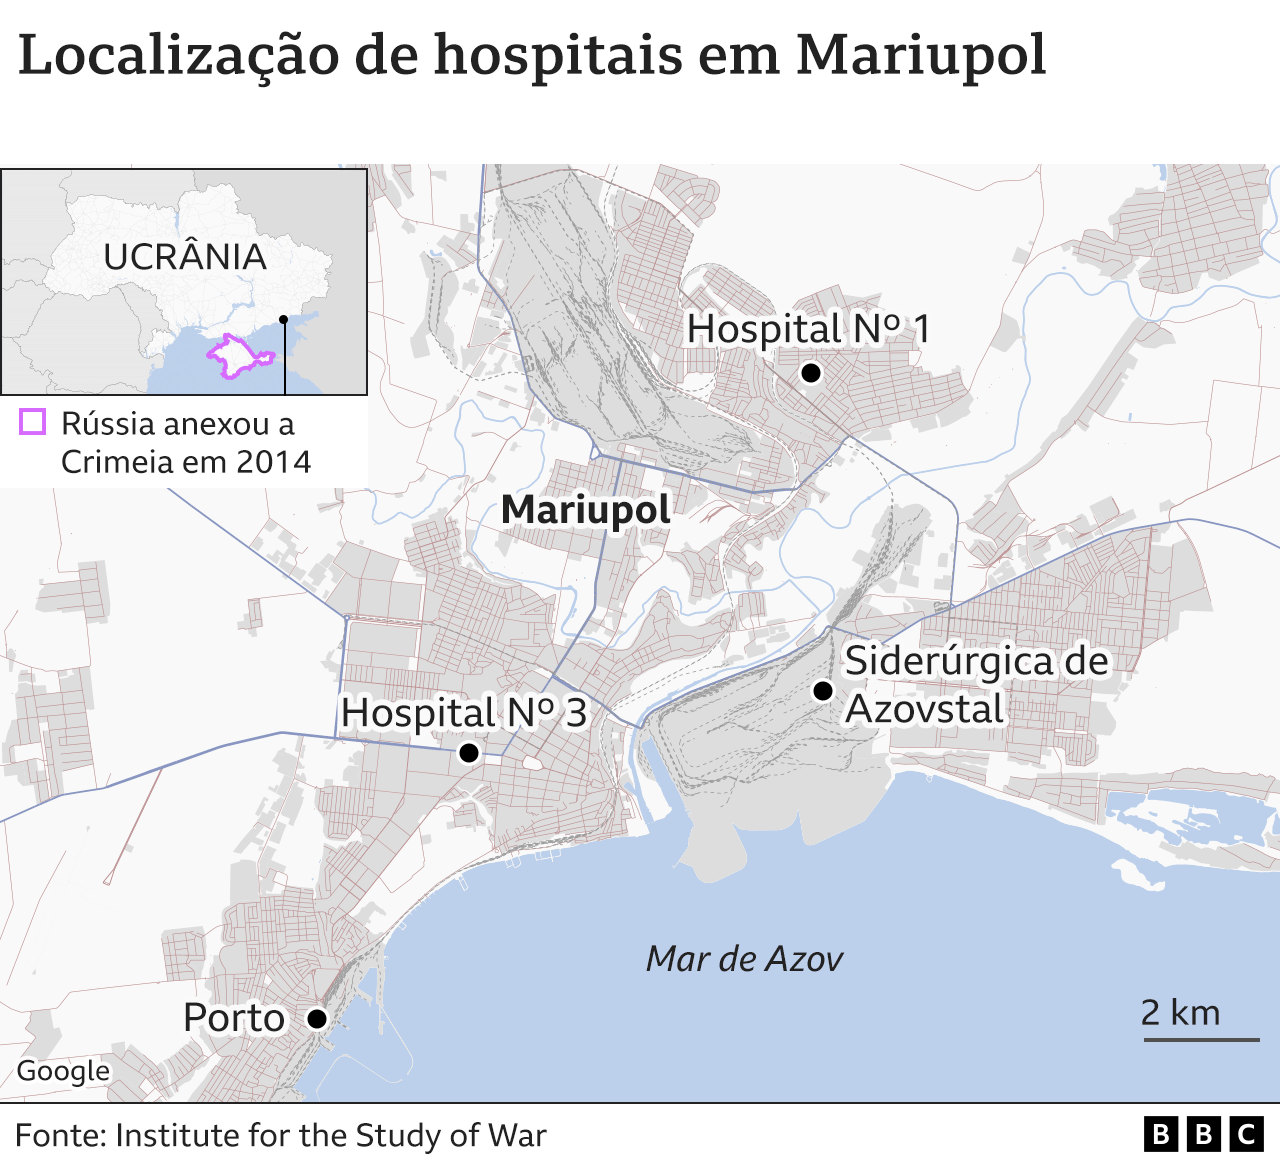 Hospitais de Mariupol (mapa)